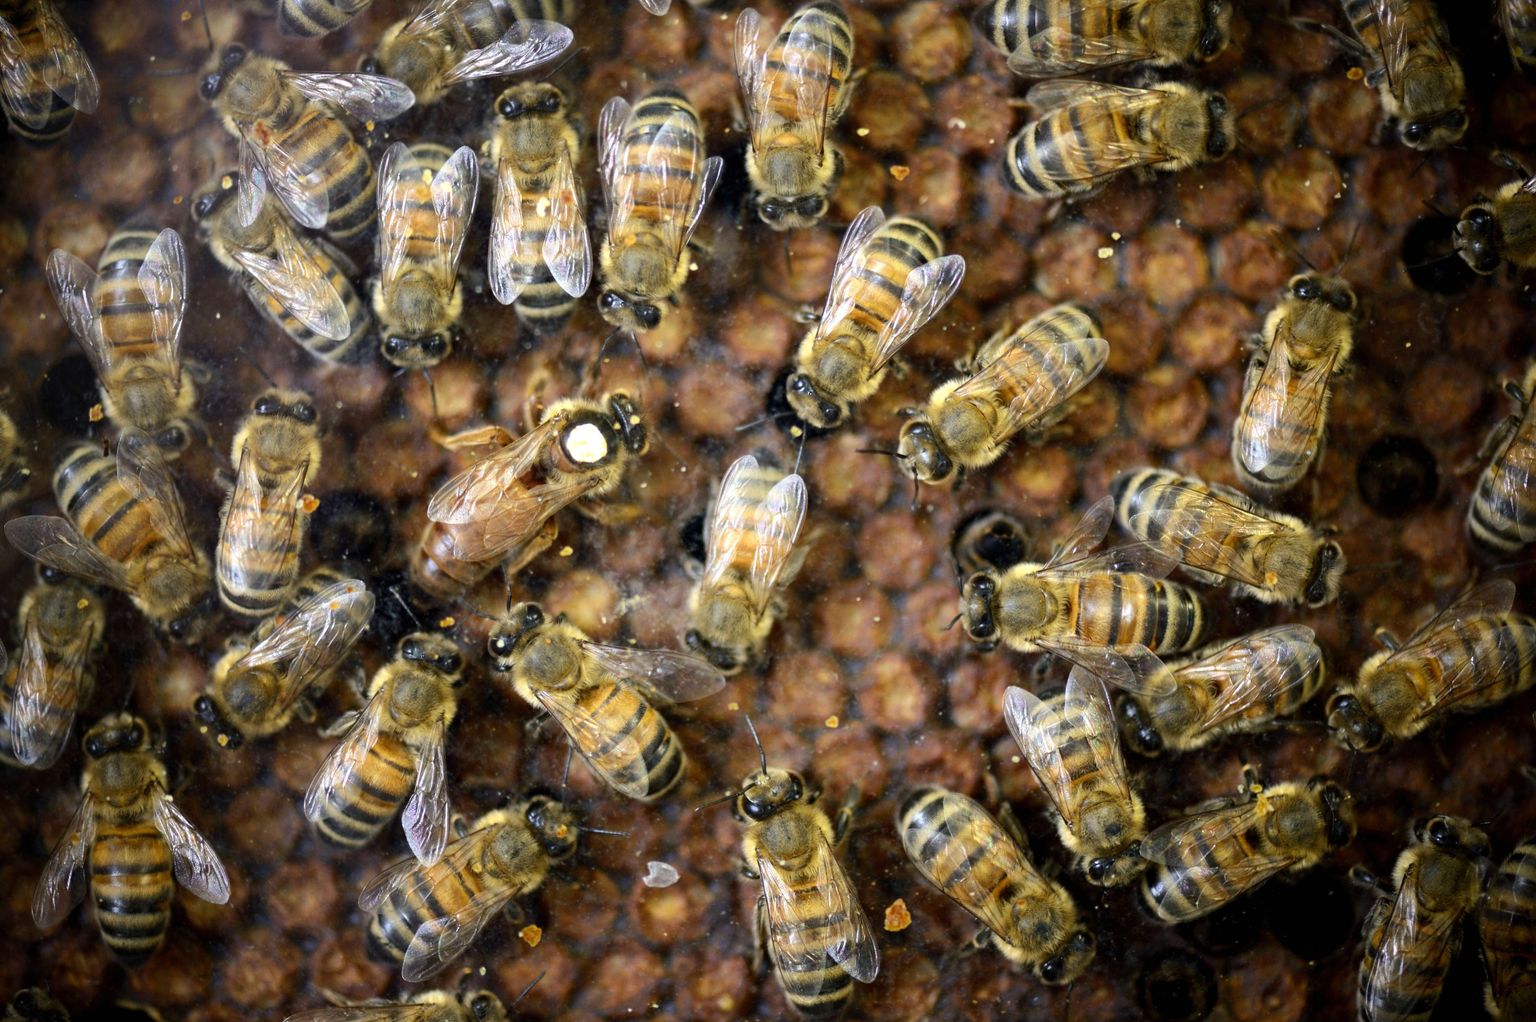 Mesilasperes tihti kostuvad, kuid inimkõrva jaoks tabamatud häälitsused osutusid mitte sõnumiks mesilindude kommunikatsioonis, vaid hoopis üllatust väljendavateks hüüeteks.